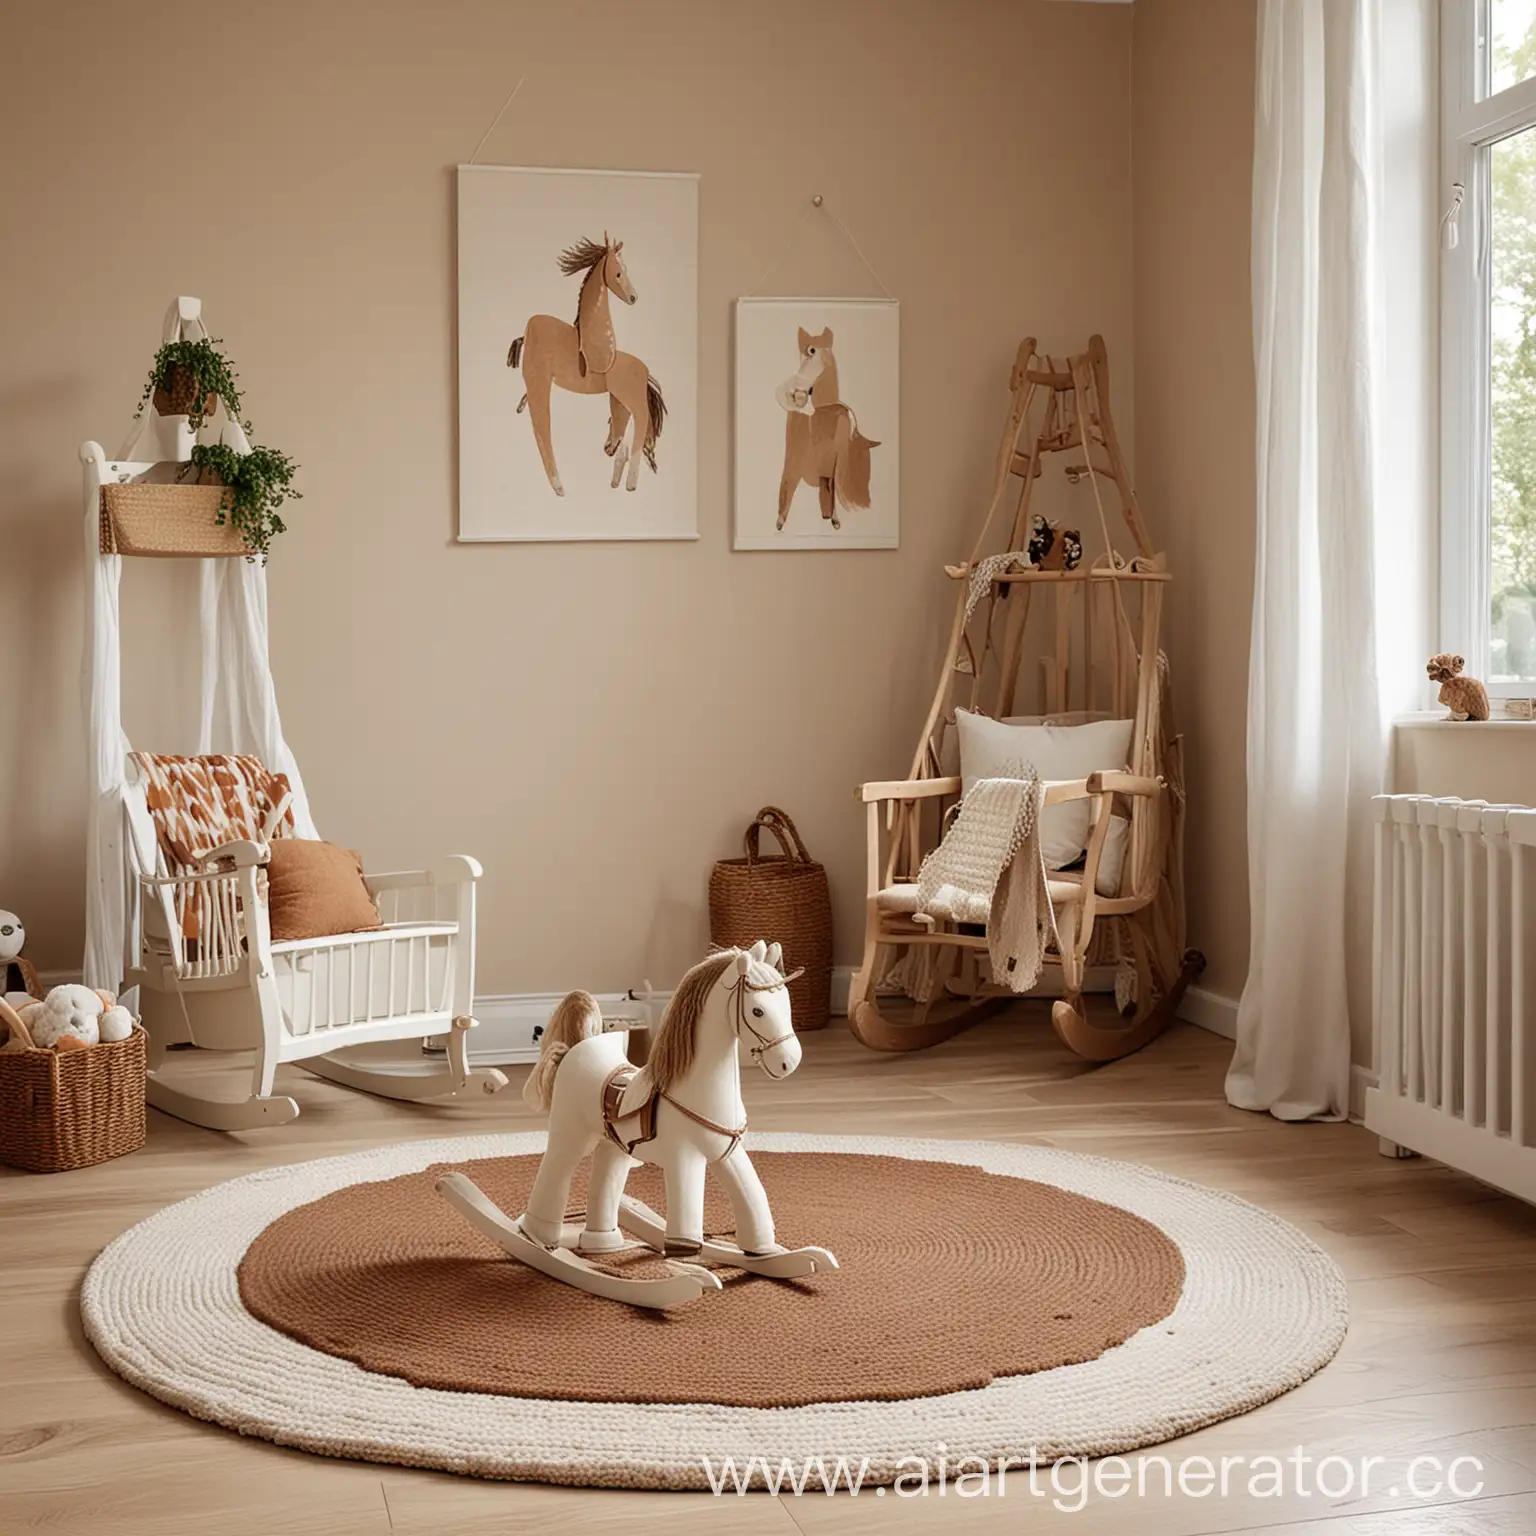 детская комната в бежевых оттенках, коричневый круглый ковер, белая лошадка-качалка
